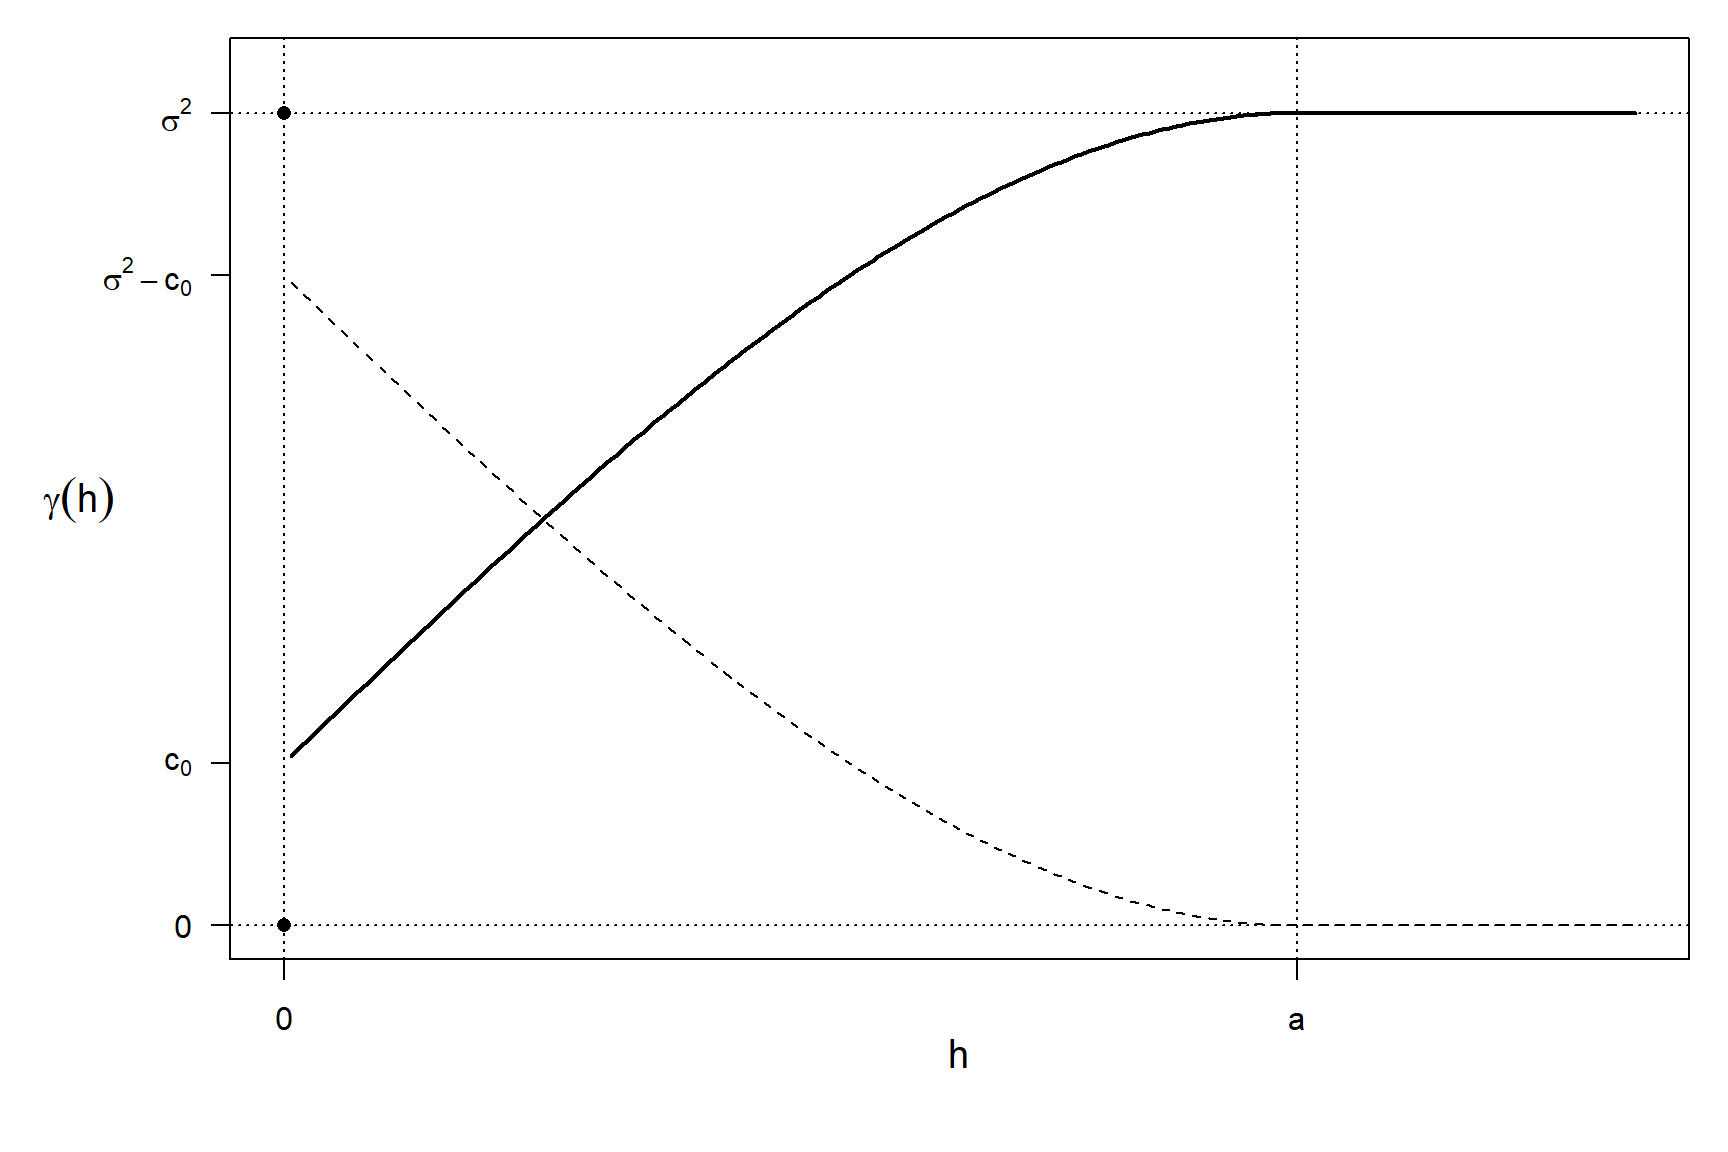 Relación entre el covariograma (línea discontinua) y el variograma (línea continua) en el caso unidimensional (o isotrópico), y principales características: nugget (\(c_0\)), umbral (\(\sigma^2\); umbral parcial \(\sigma^2 - c_0\)) y rango (\(a\)).